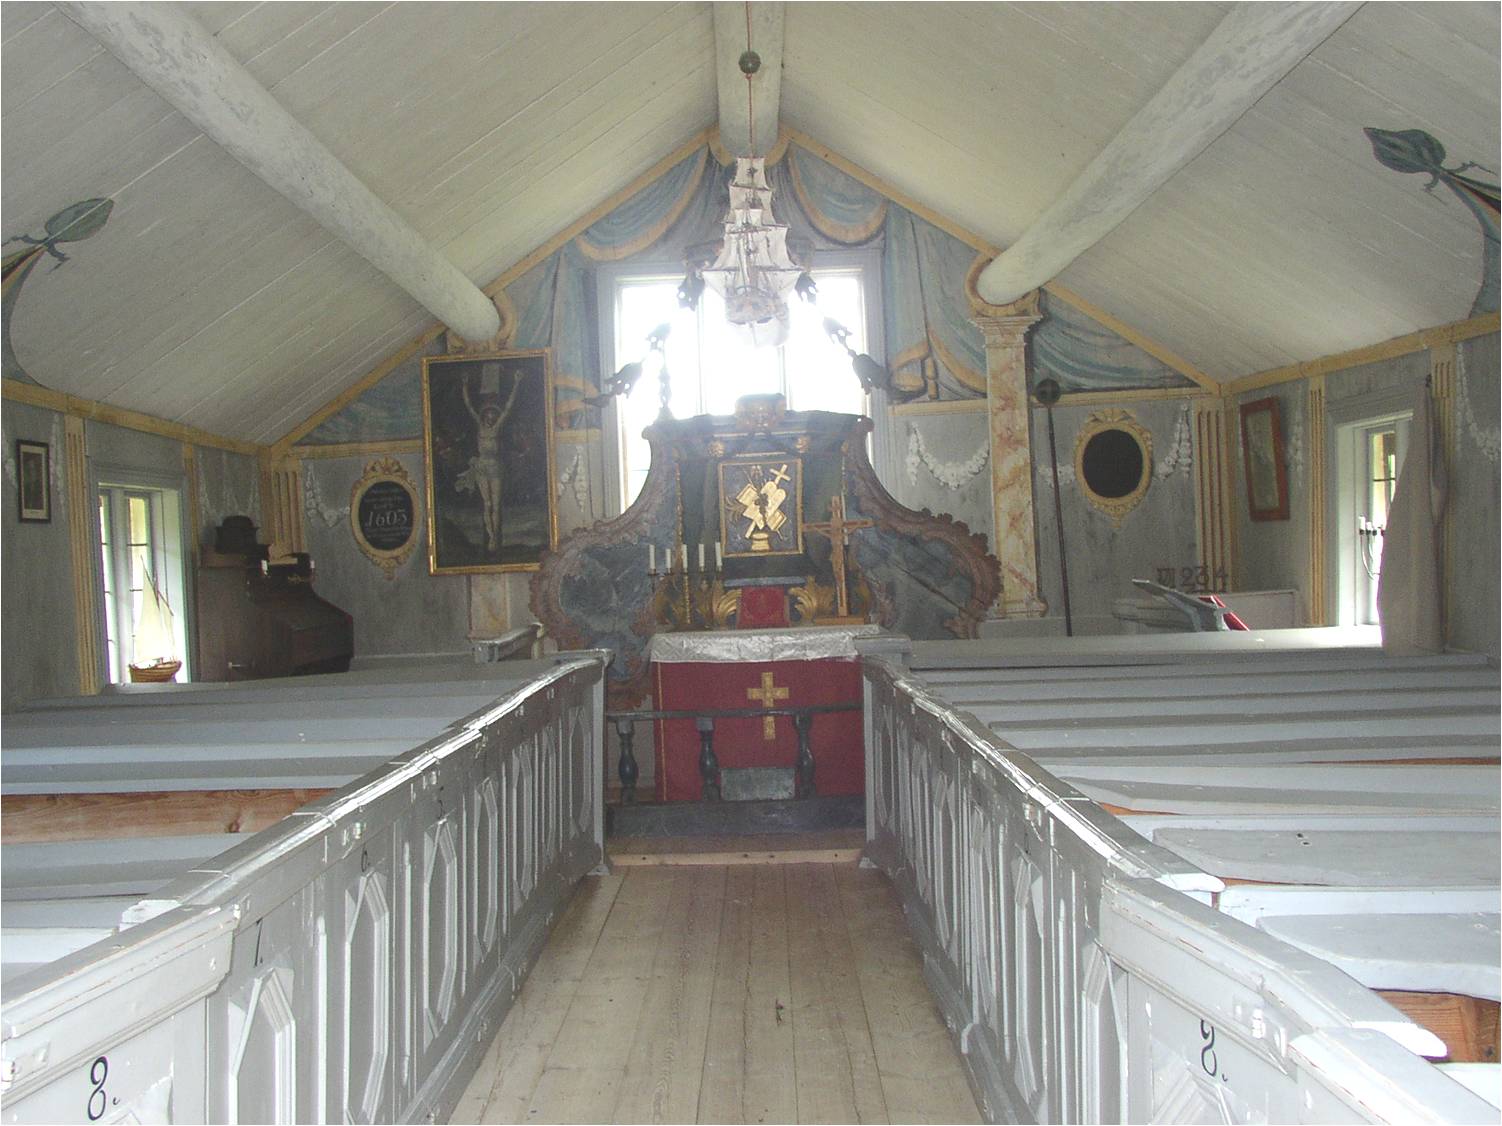 Kapellets interiör från väster. 